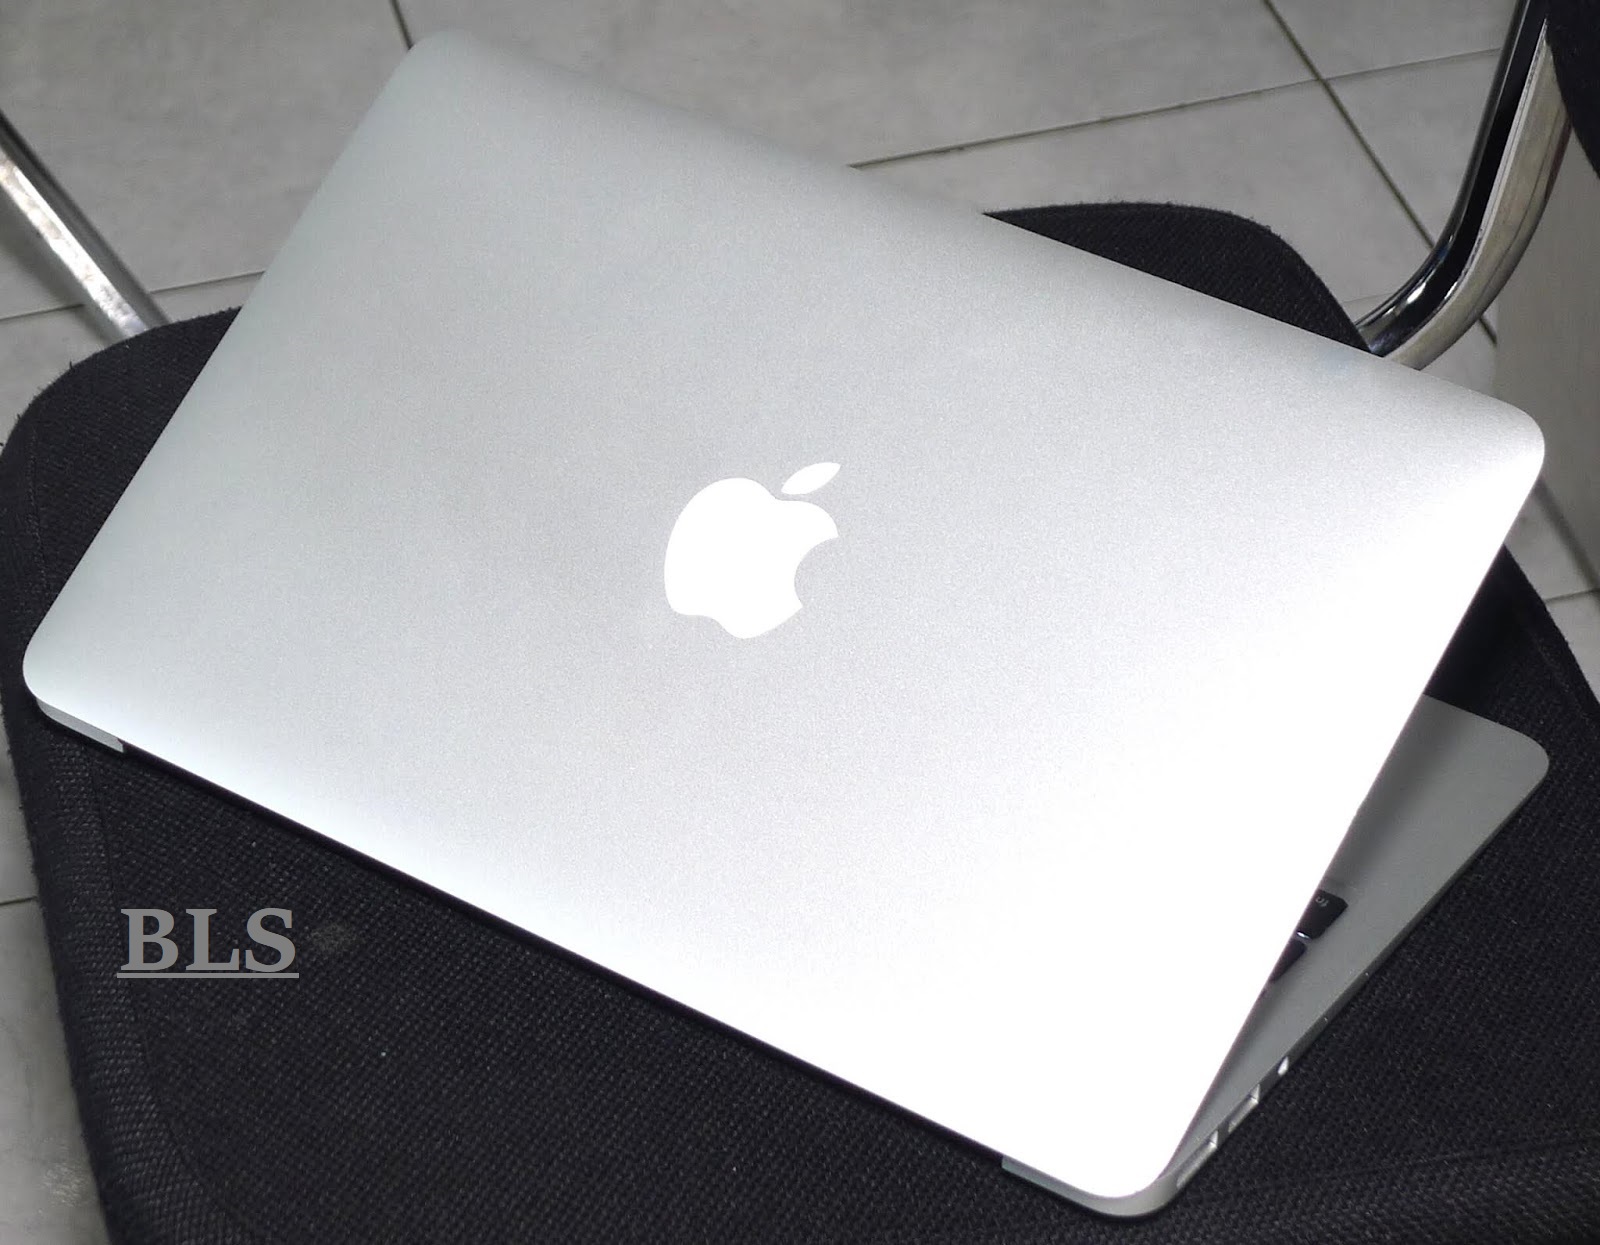 Jual MacBook Air 11 Inchi Core i5 Mid 2012 Bekas | Jual Beli Laptop